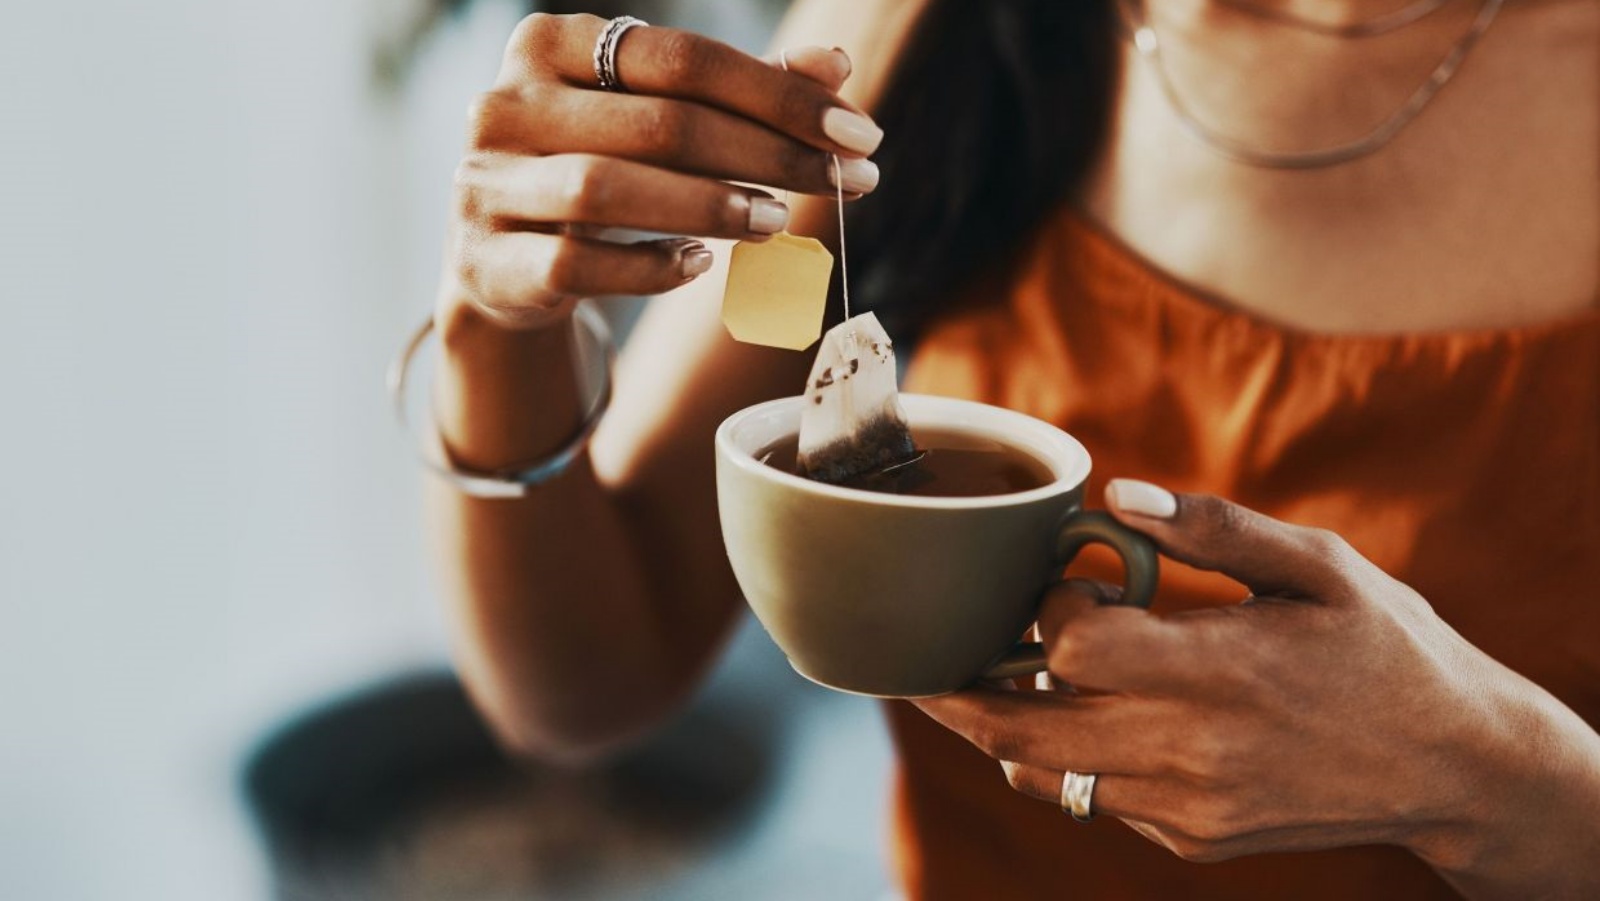 الشاي الأسود يحتوي على معادن مرتبطة بصحة القلب والدماغ والأمعاء